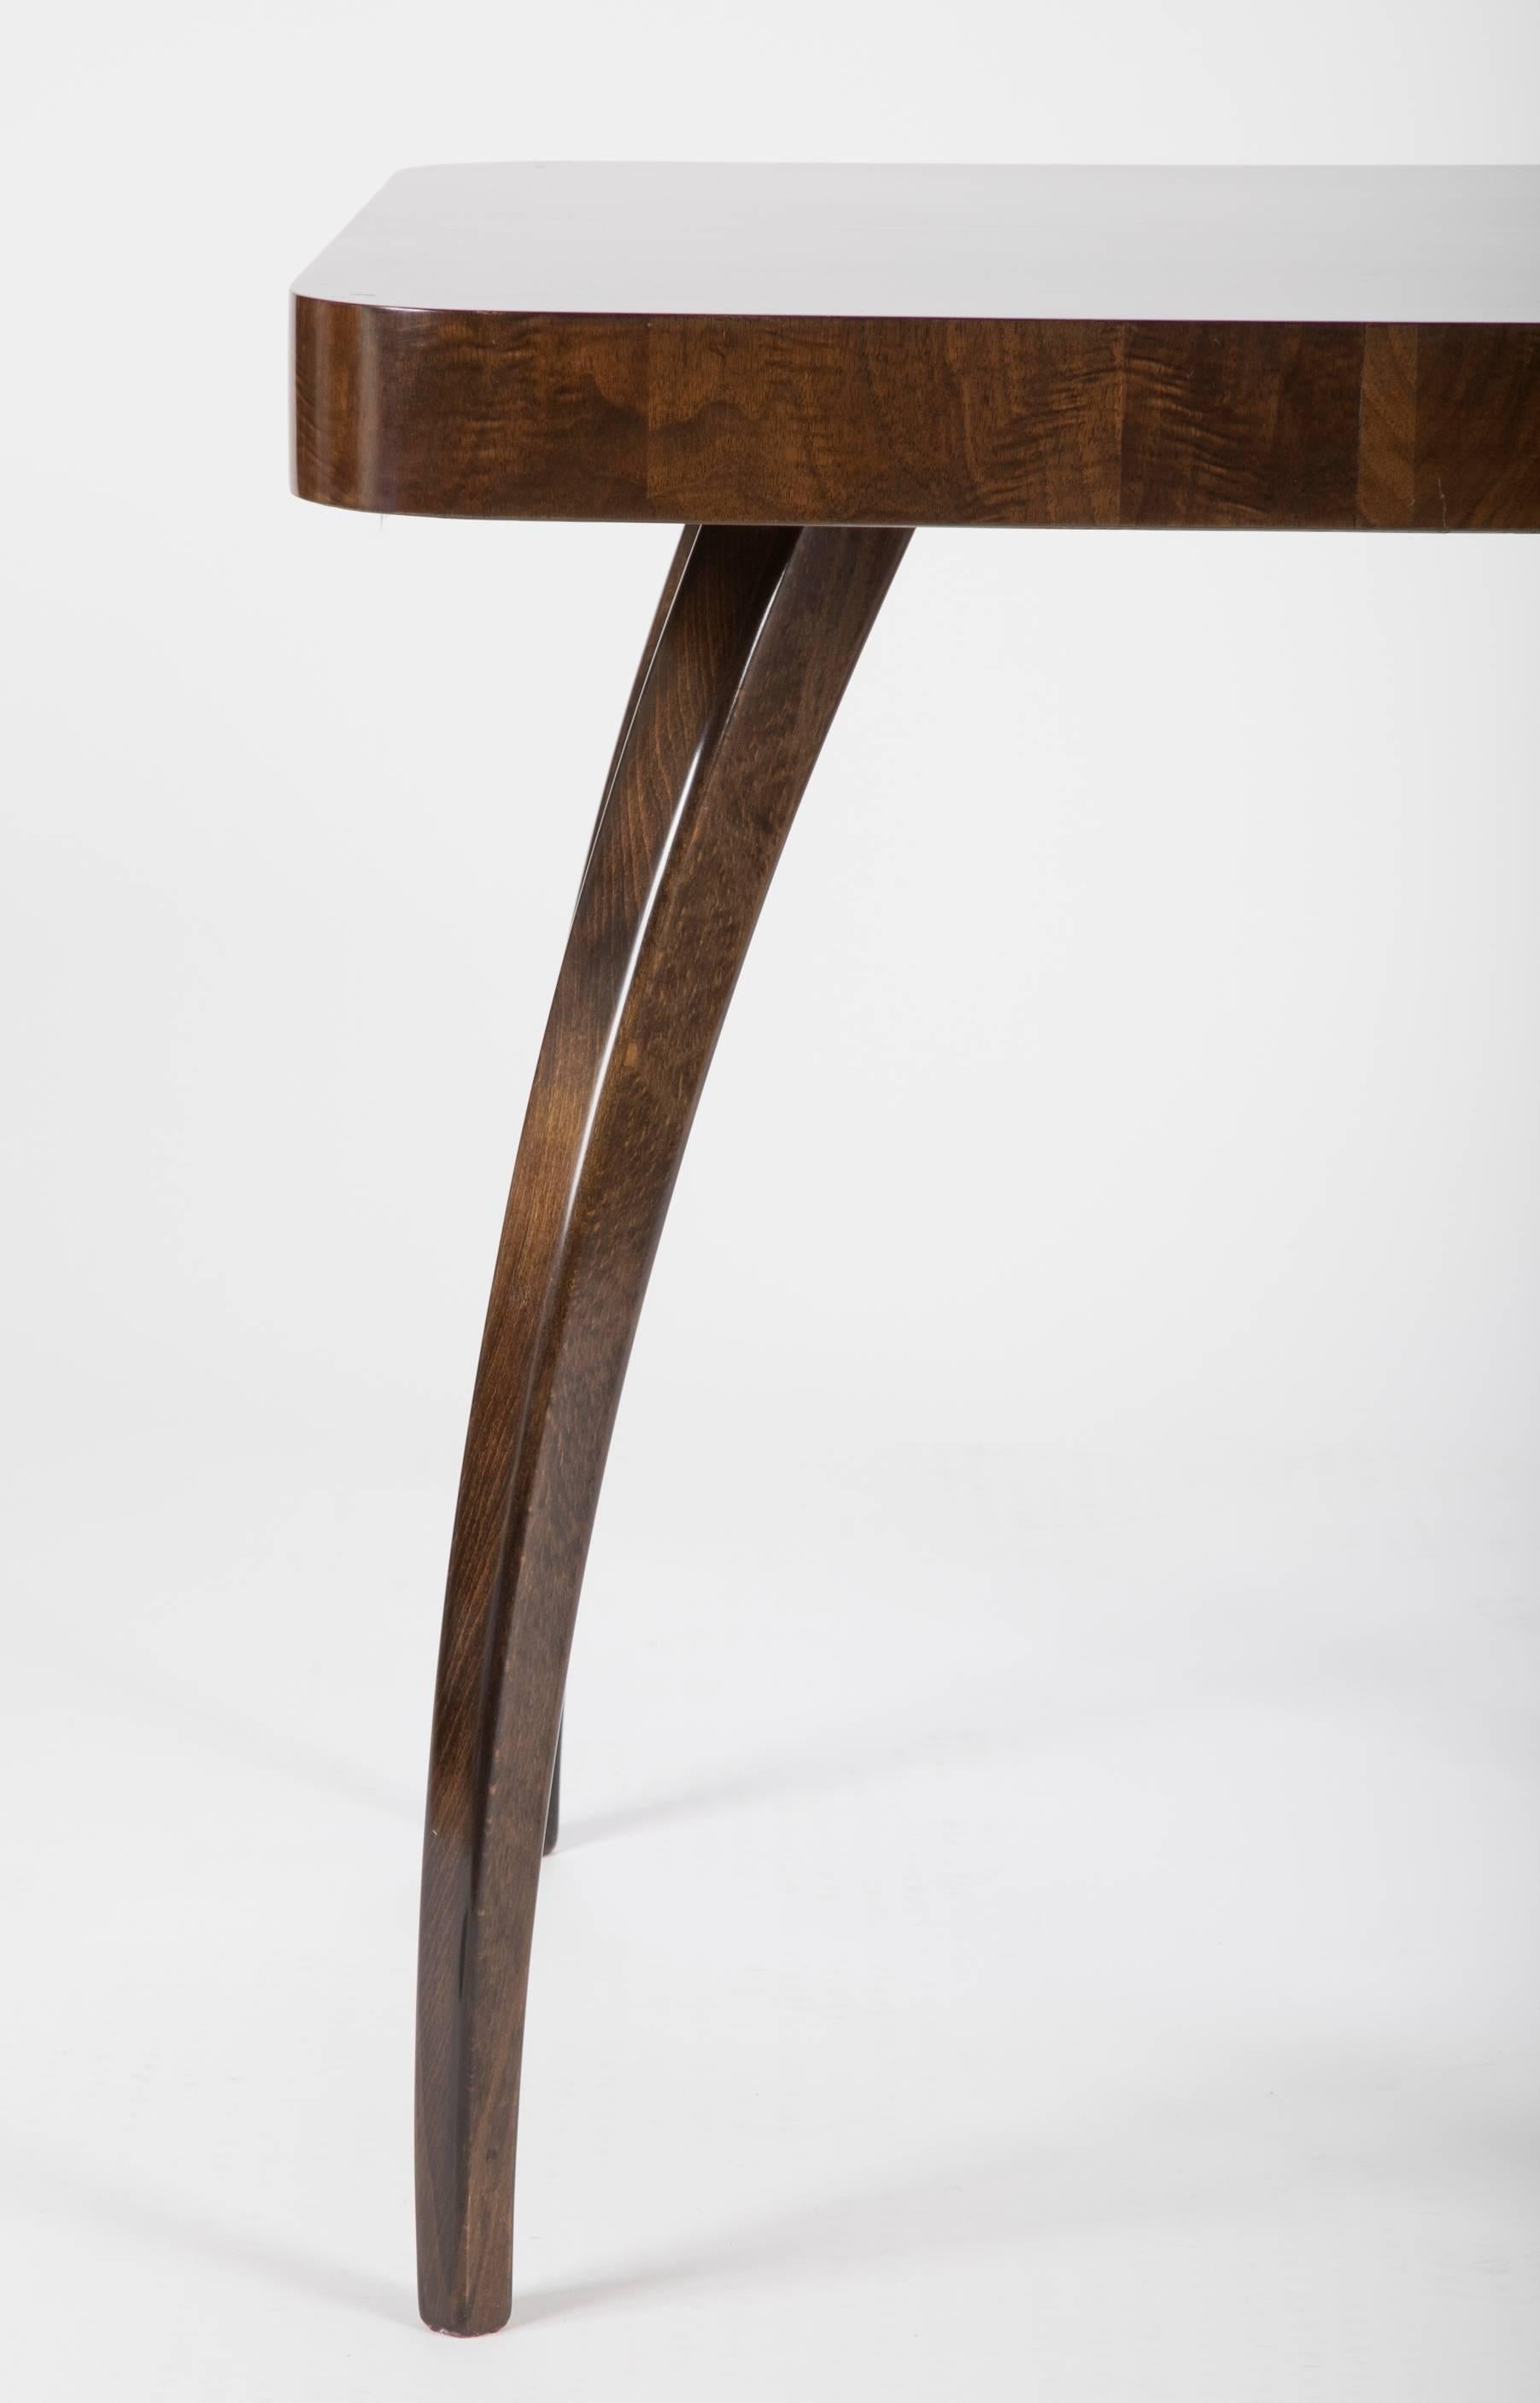 Czech Walnut Side Table Designed by Jindrich Halabala in the 1930s